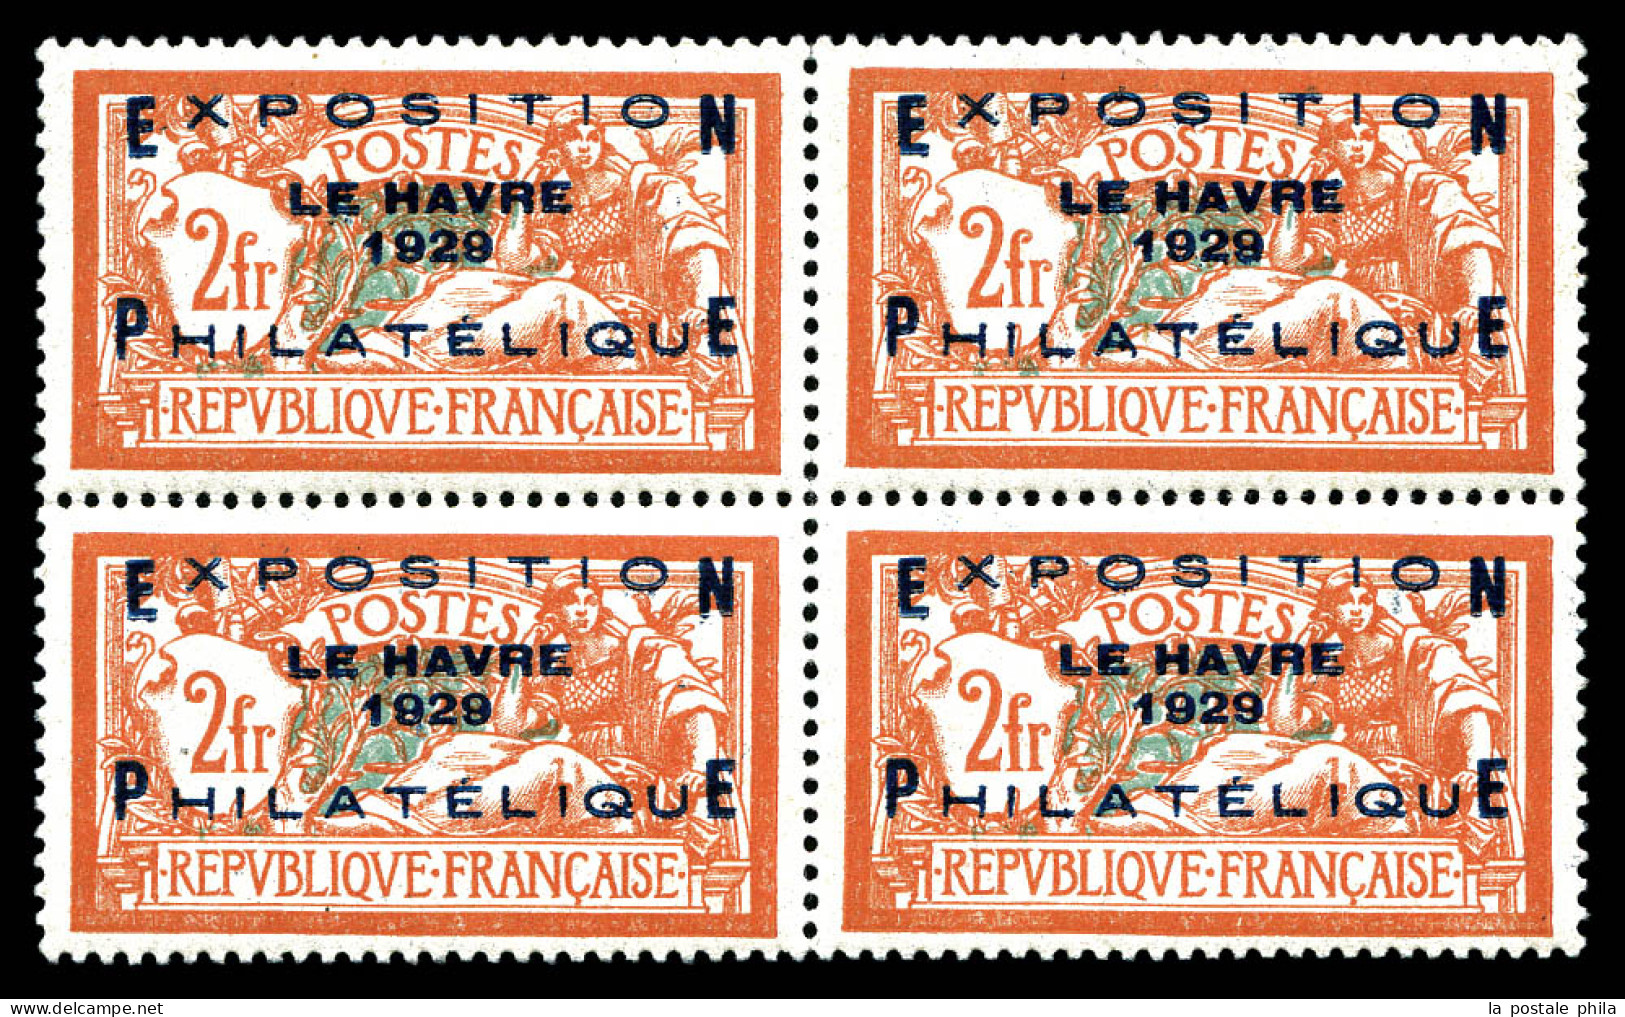 ** N°257A, Exposition Du Havre 1929 En Bloc De Quatre, Fraîcheur Postale, Très Bon Centrage. SUP. R.R. (certificat)  Qua - Ungebraucht